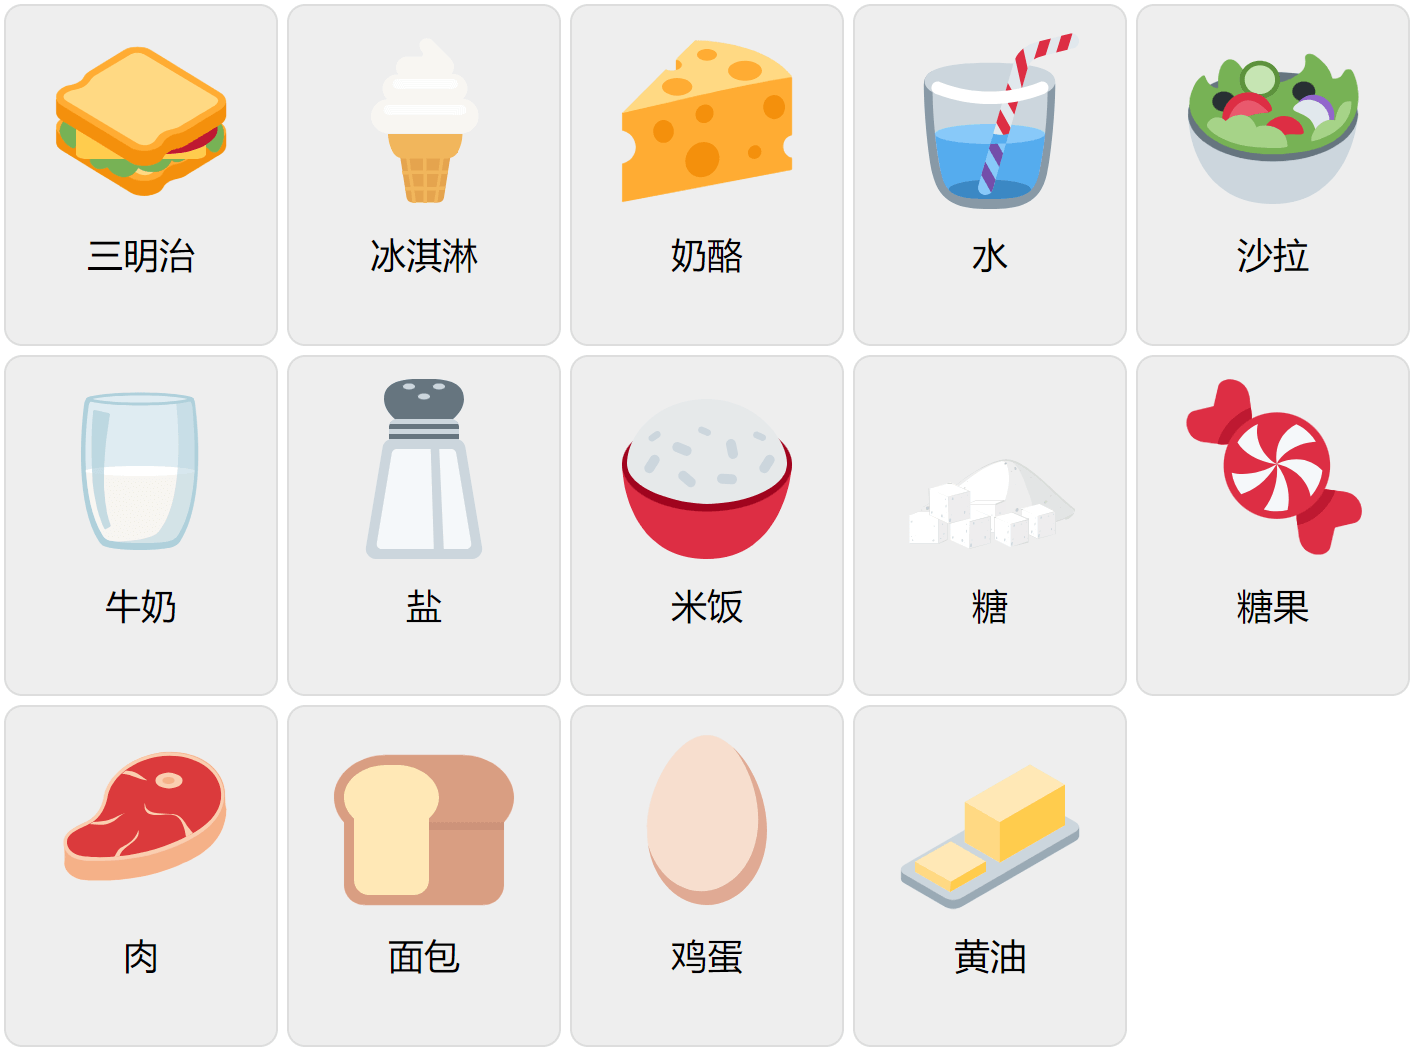 Їжа на китайській мові 1